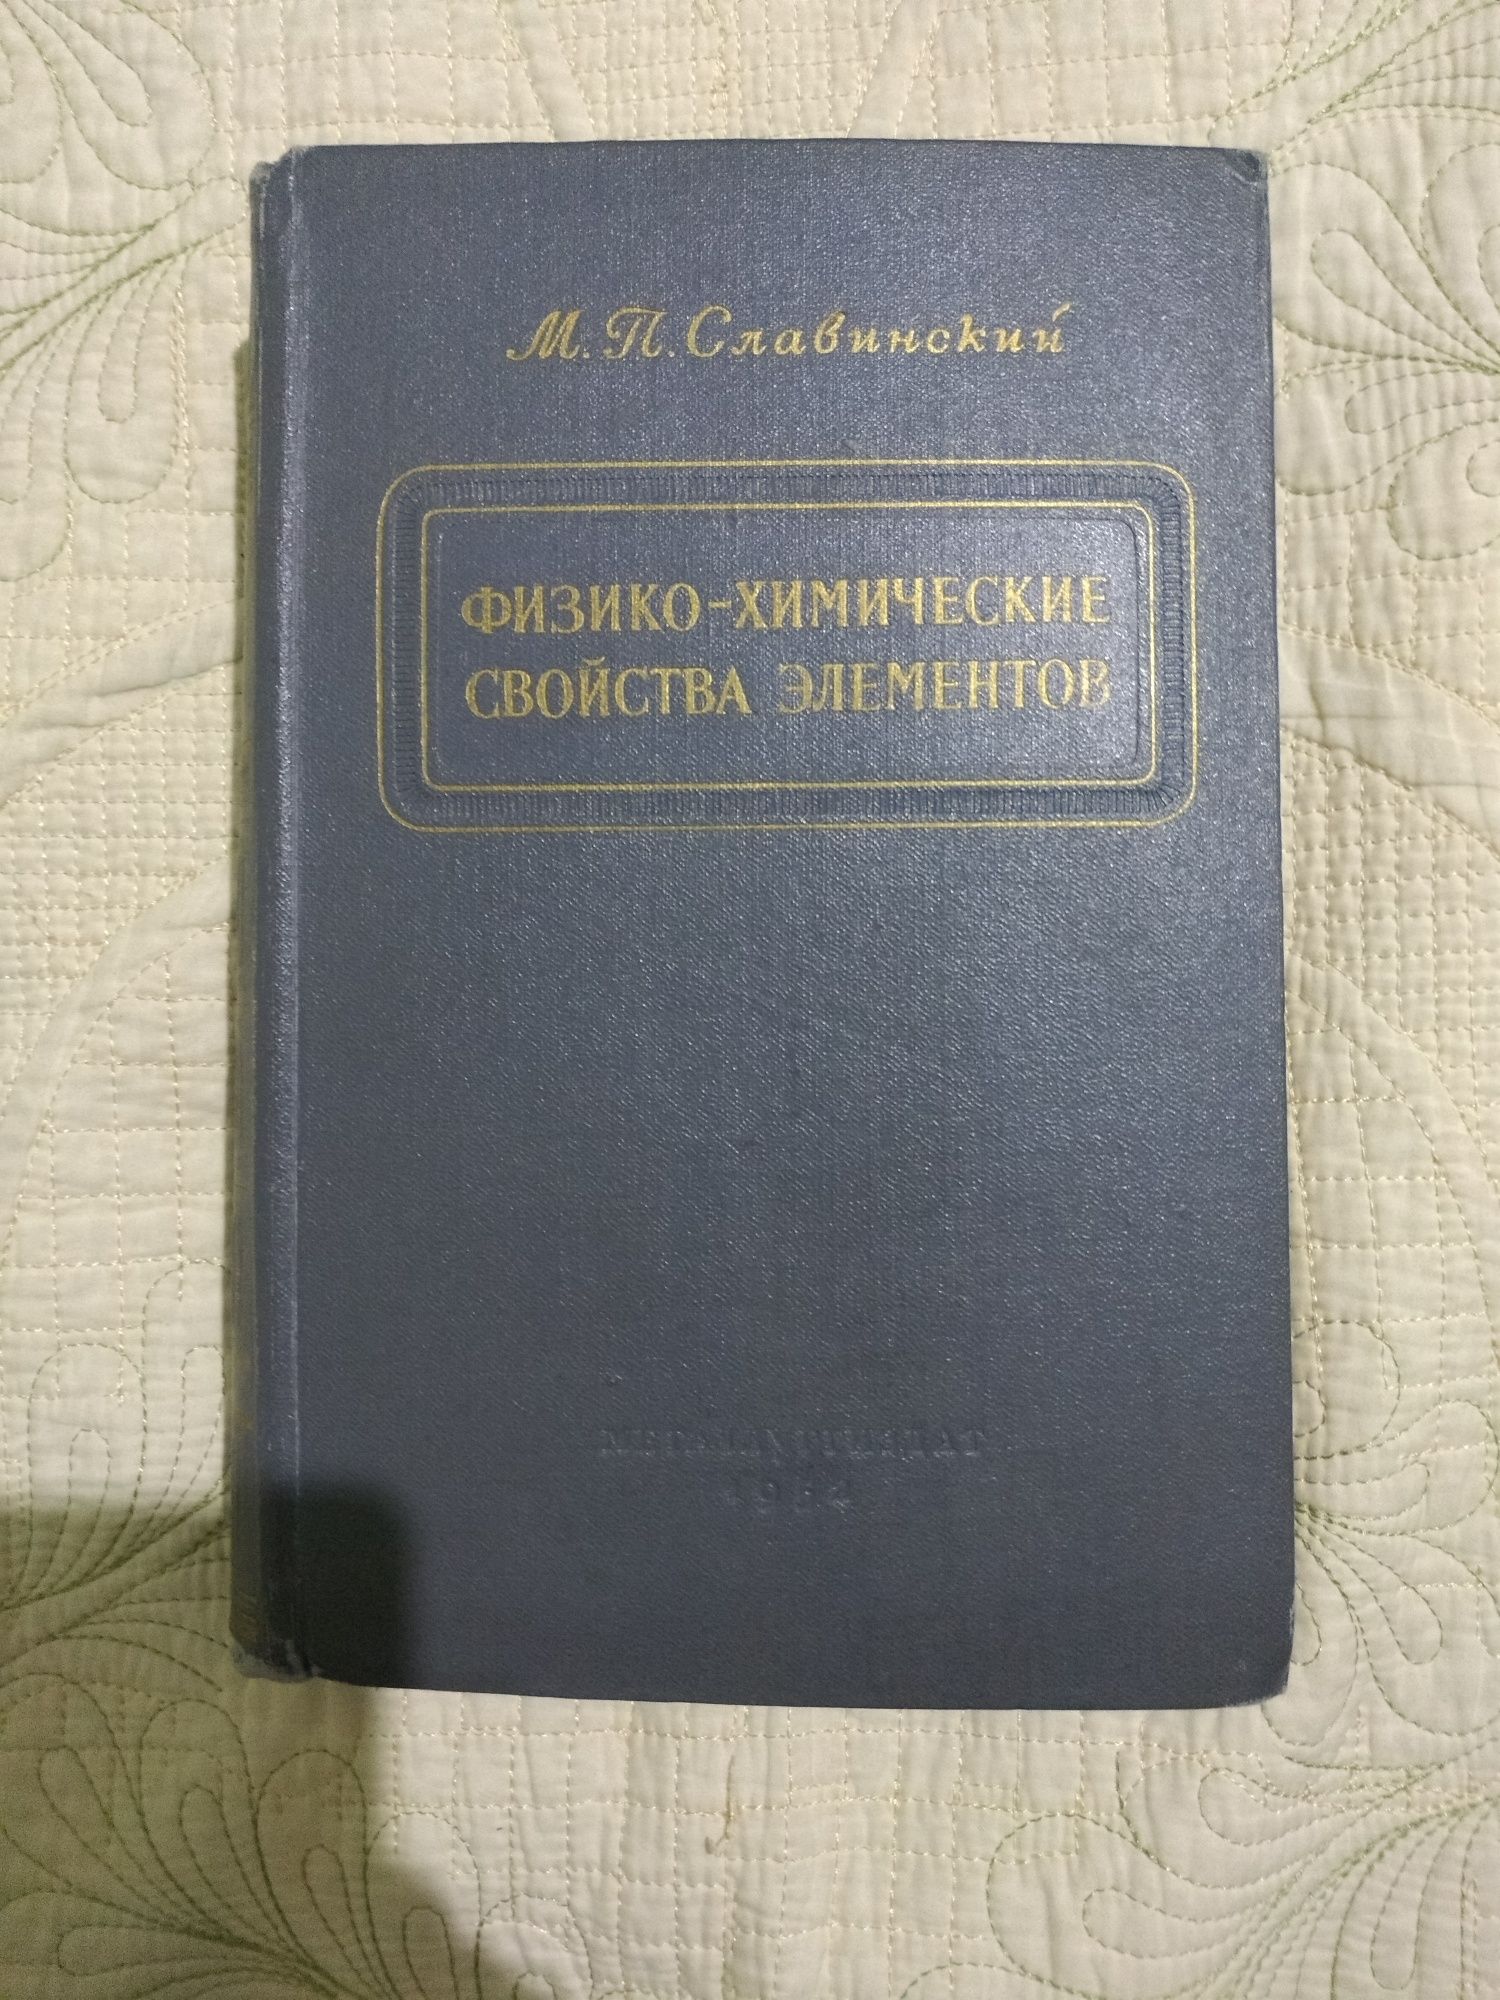 Редчайшие книги по химии. Менделеев, Каблуков, Славинский.